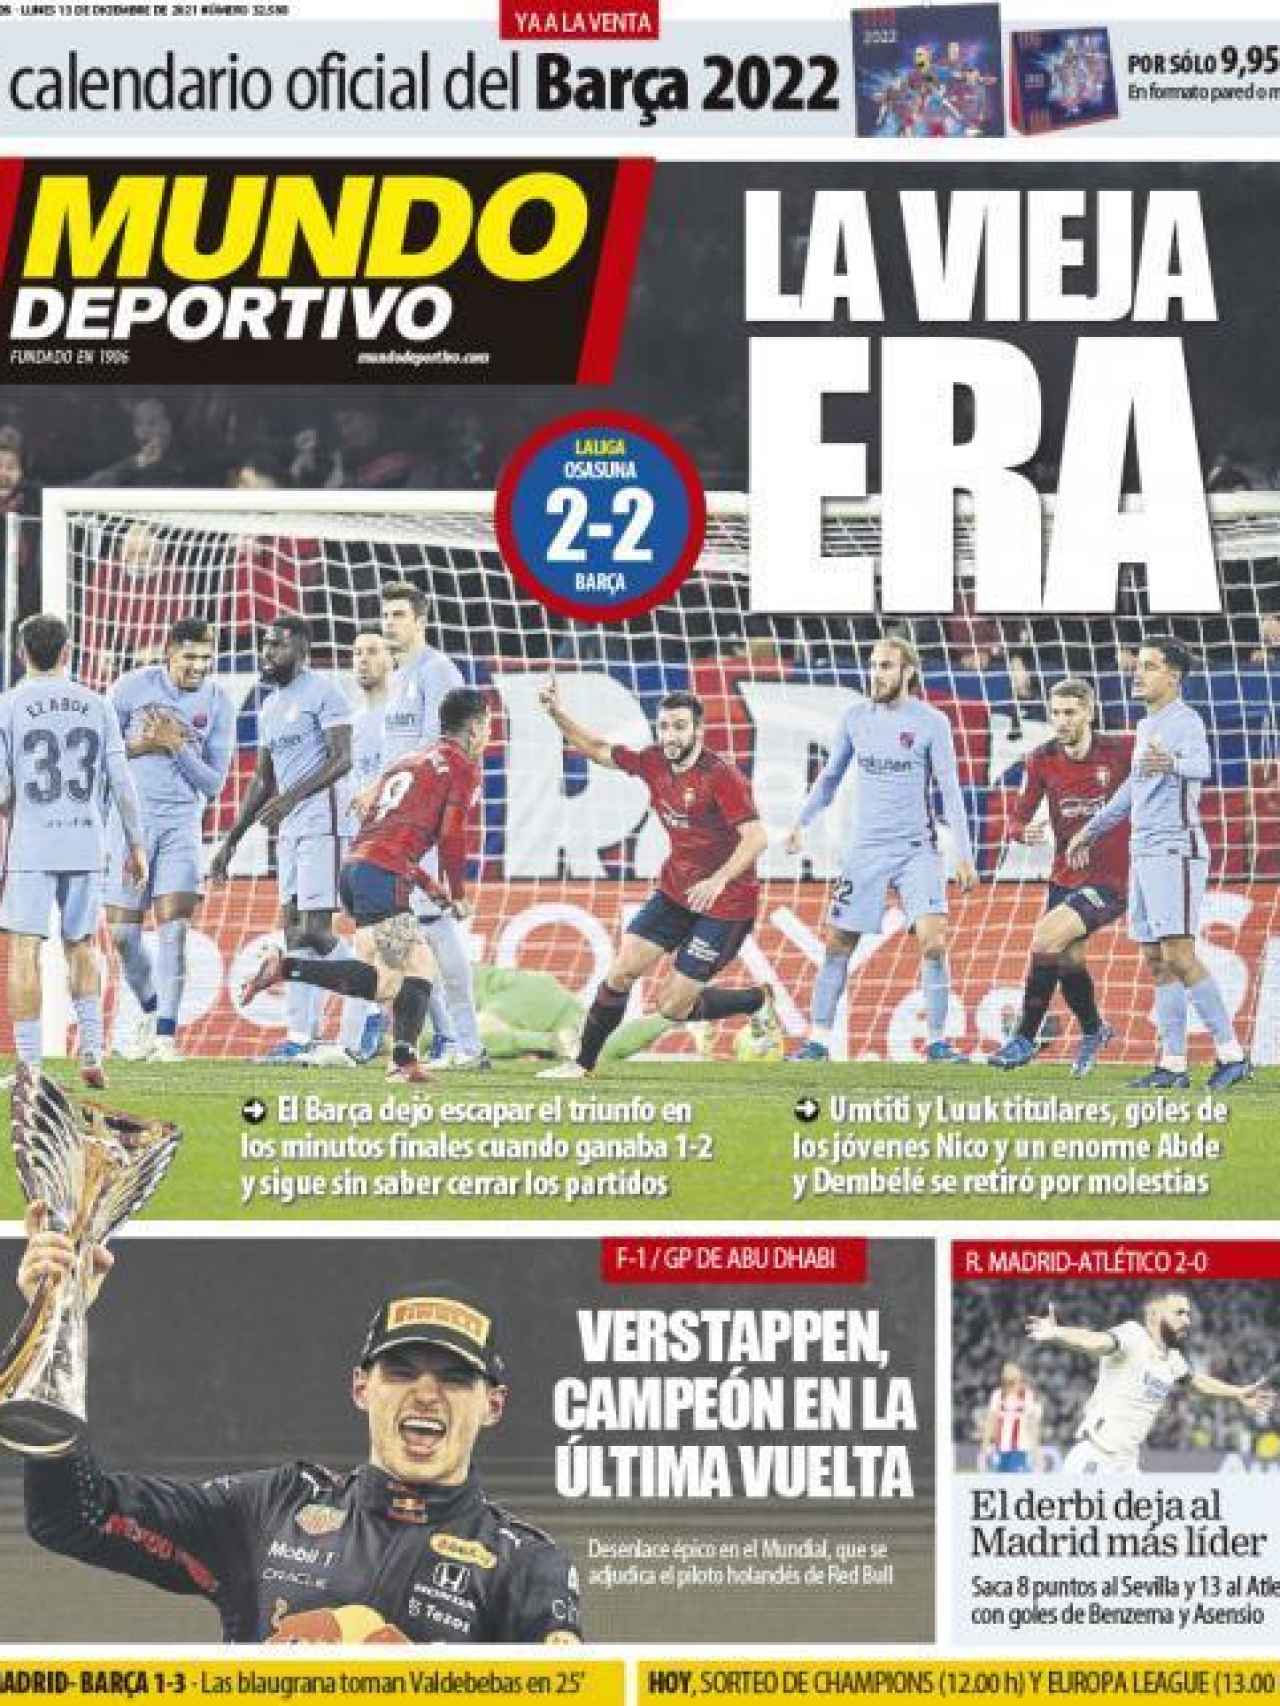 La portada del diario Mundo Deportivo (13/12/2021)